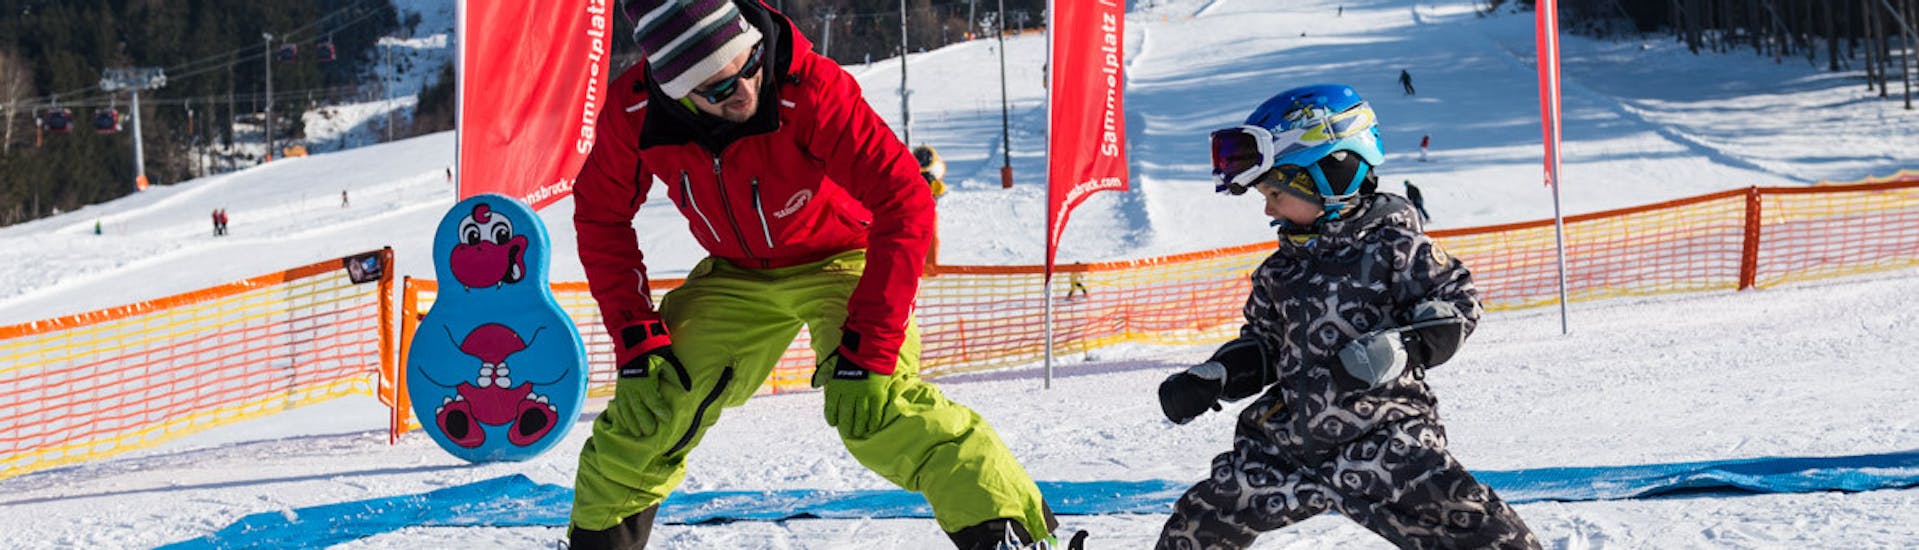 Privé skilessen voor kinderen met ervaring met Ski- & Snowboardschule Innsbruck.